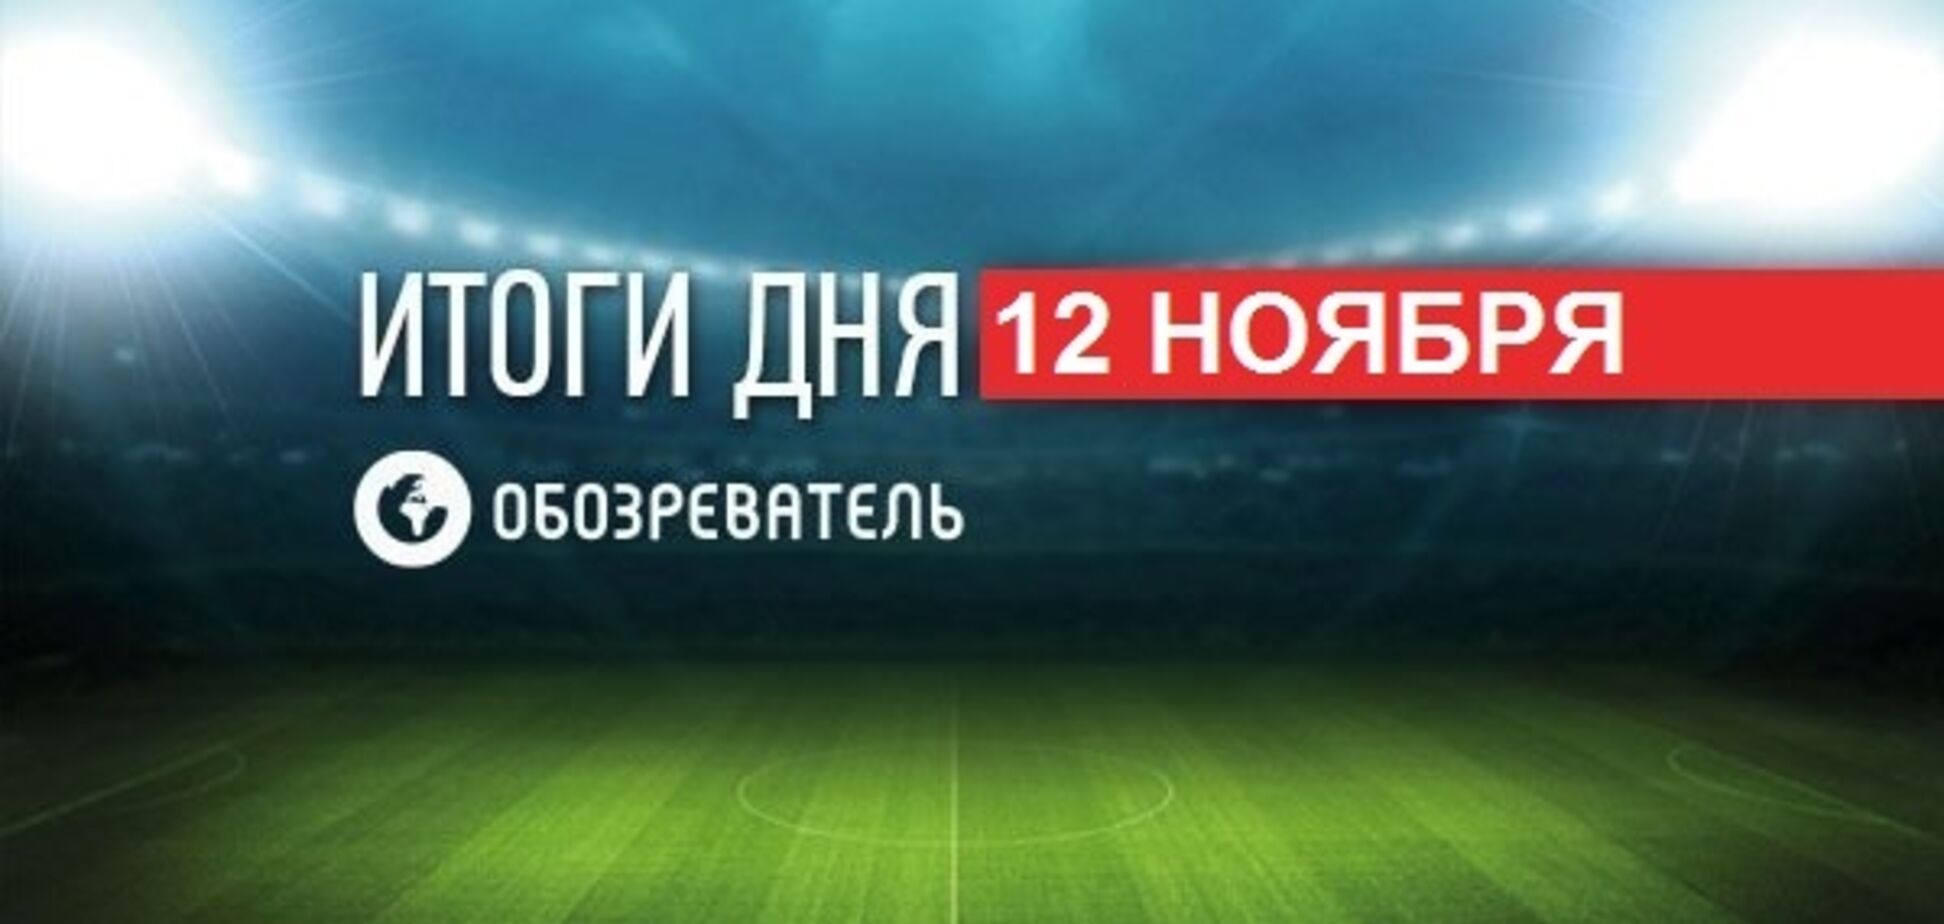 Сборная России объявила бойкот перед матчем отбора Евро-2020: спортивные итоги 12 ноября